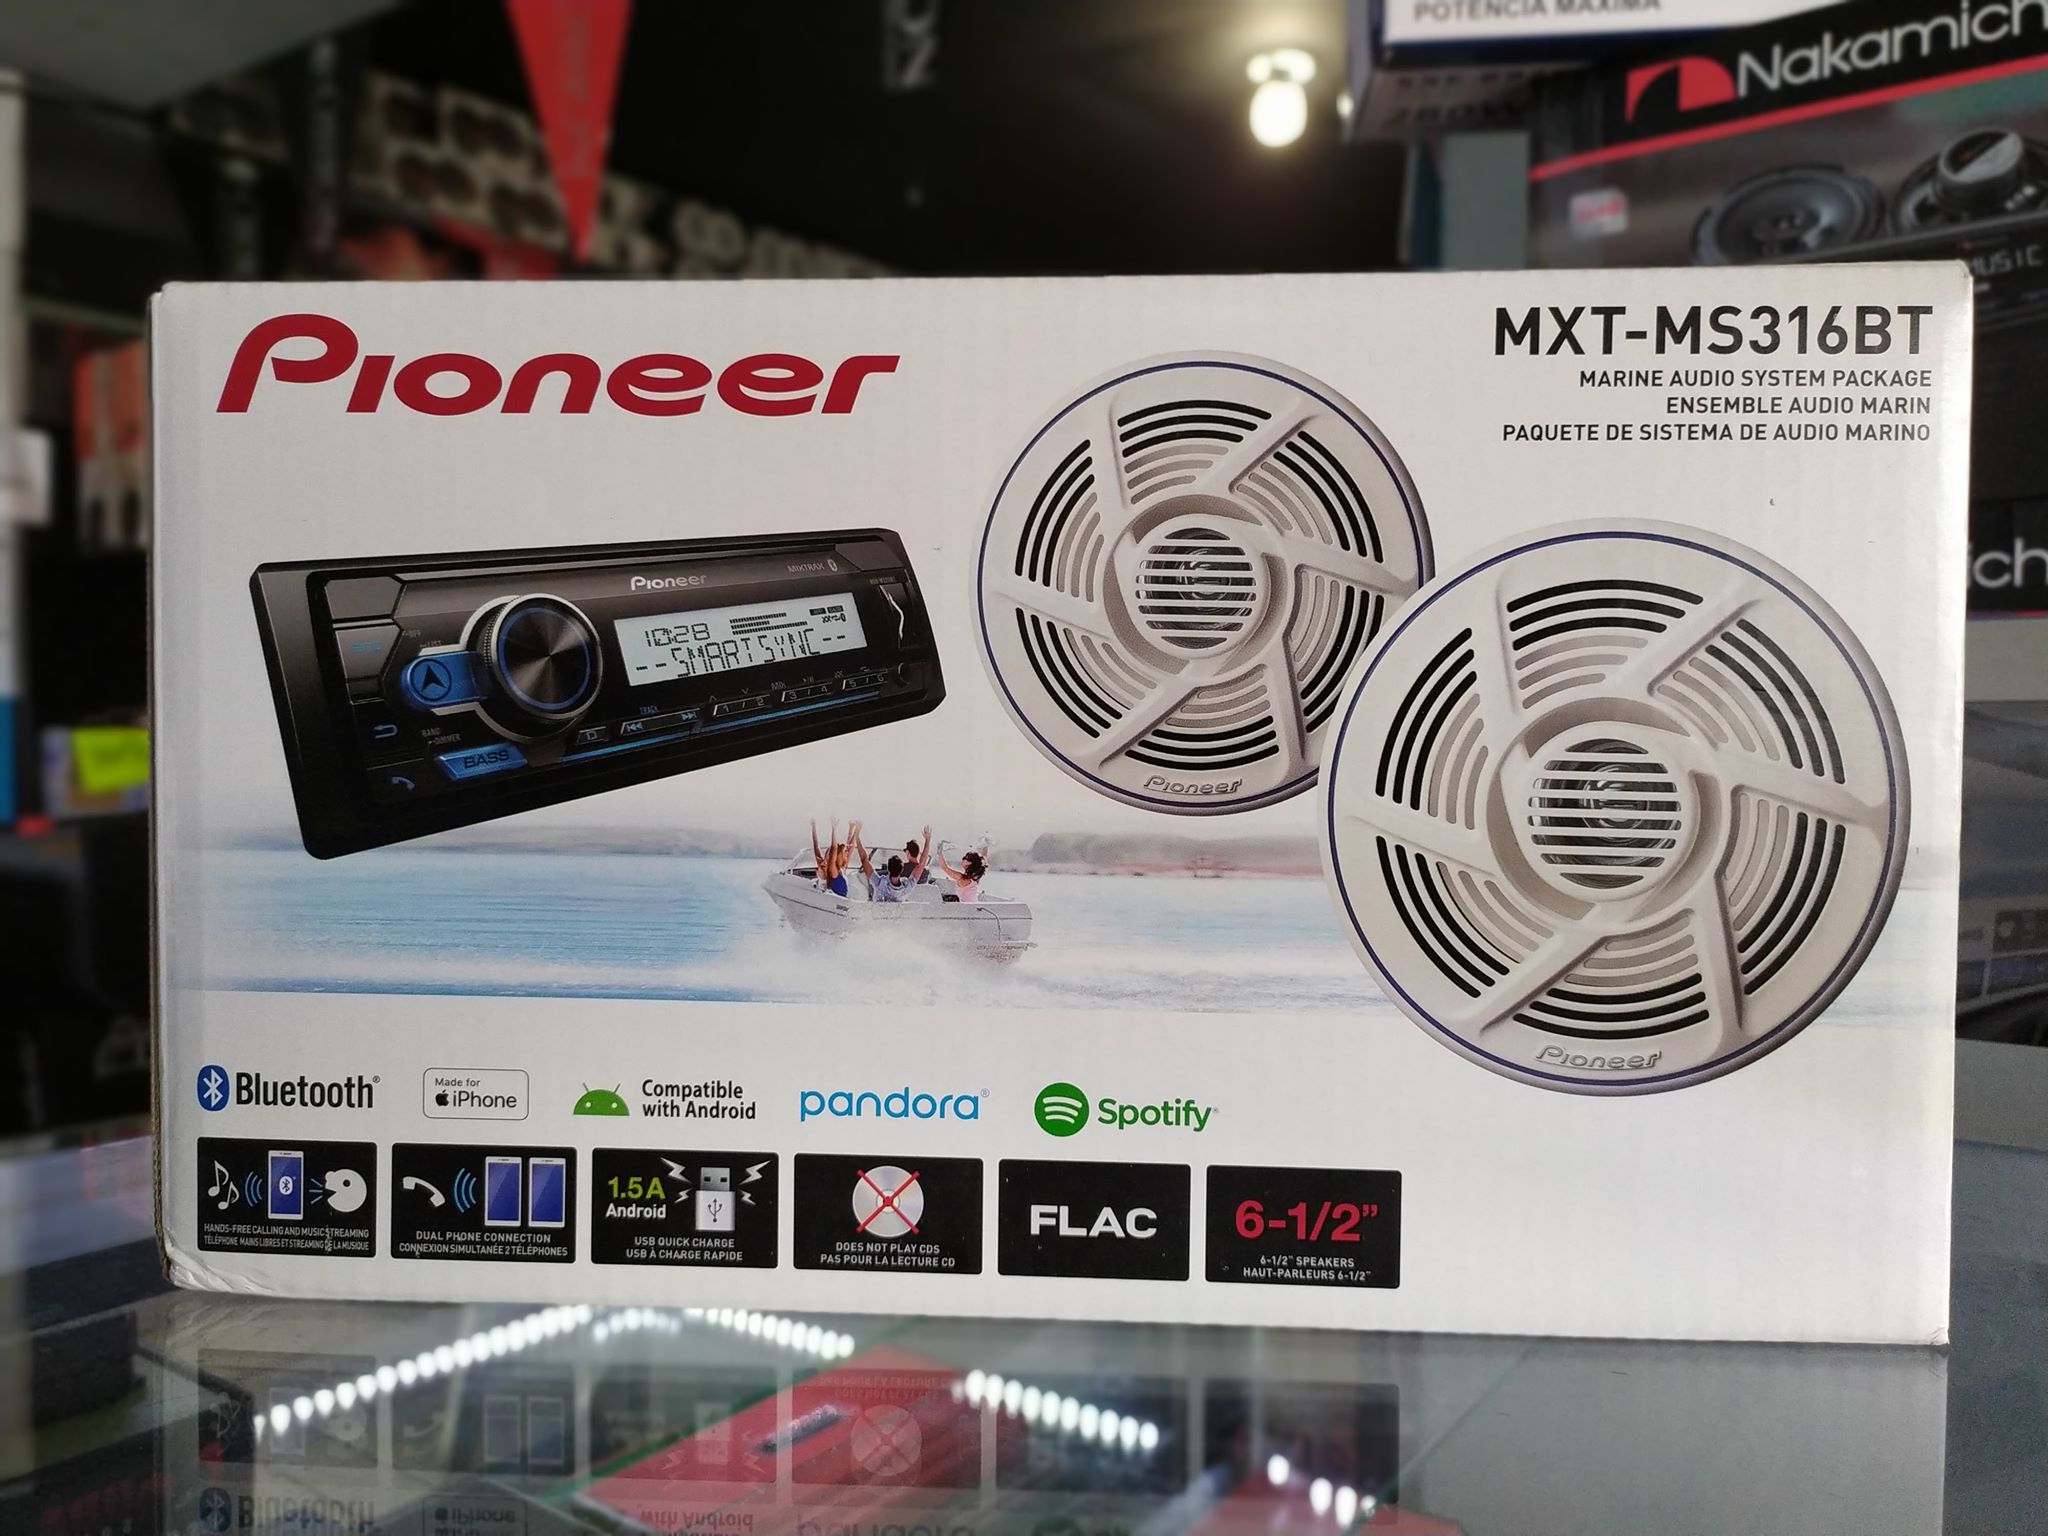 Combo de Radio Pioneer MXT-MS316BT